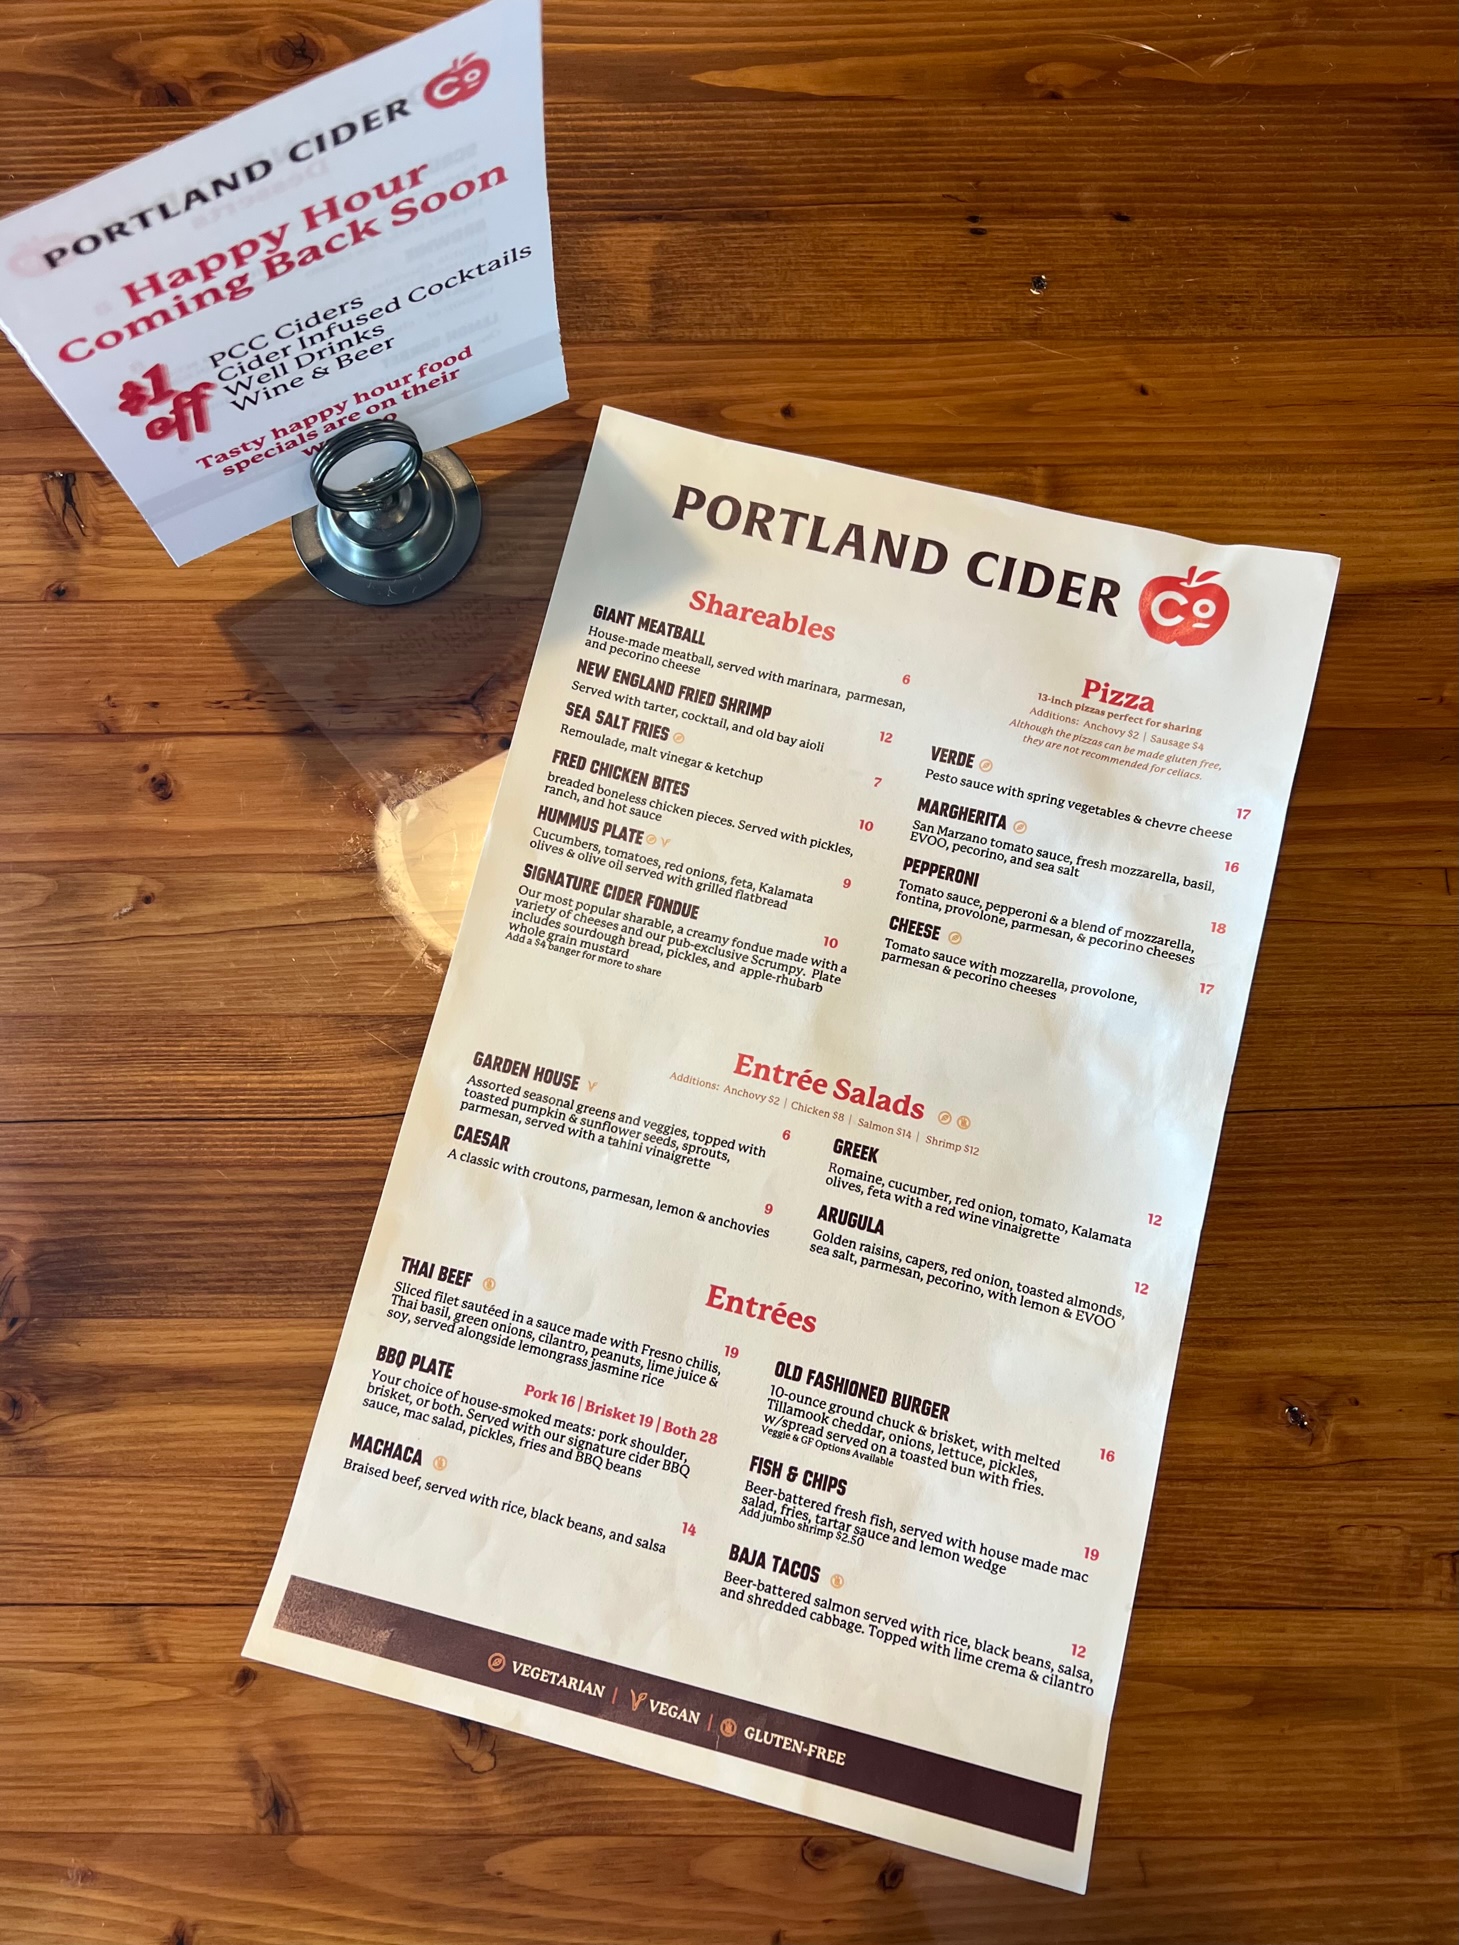 The food menu at the Portland Cider Co. Clackamas Pub & Restaurant